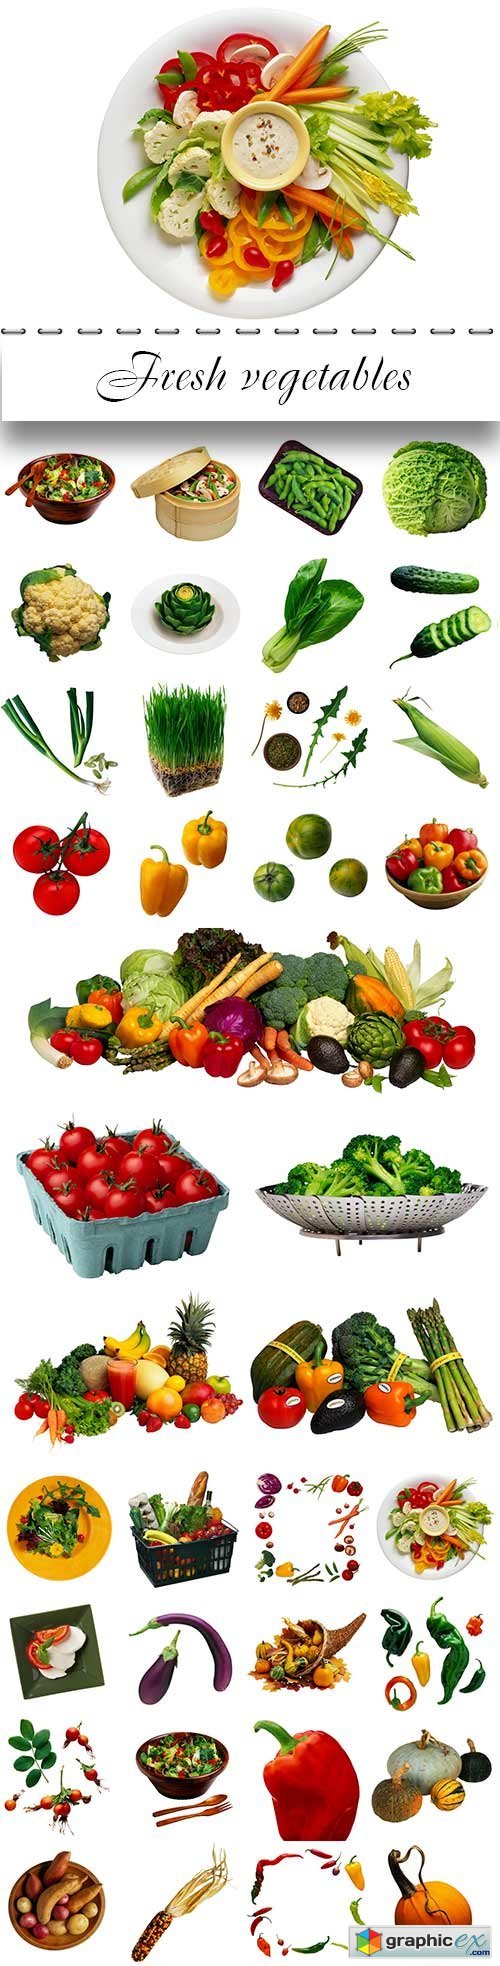 Fresh vegetables proper nutrition